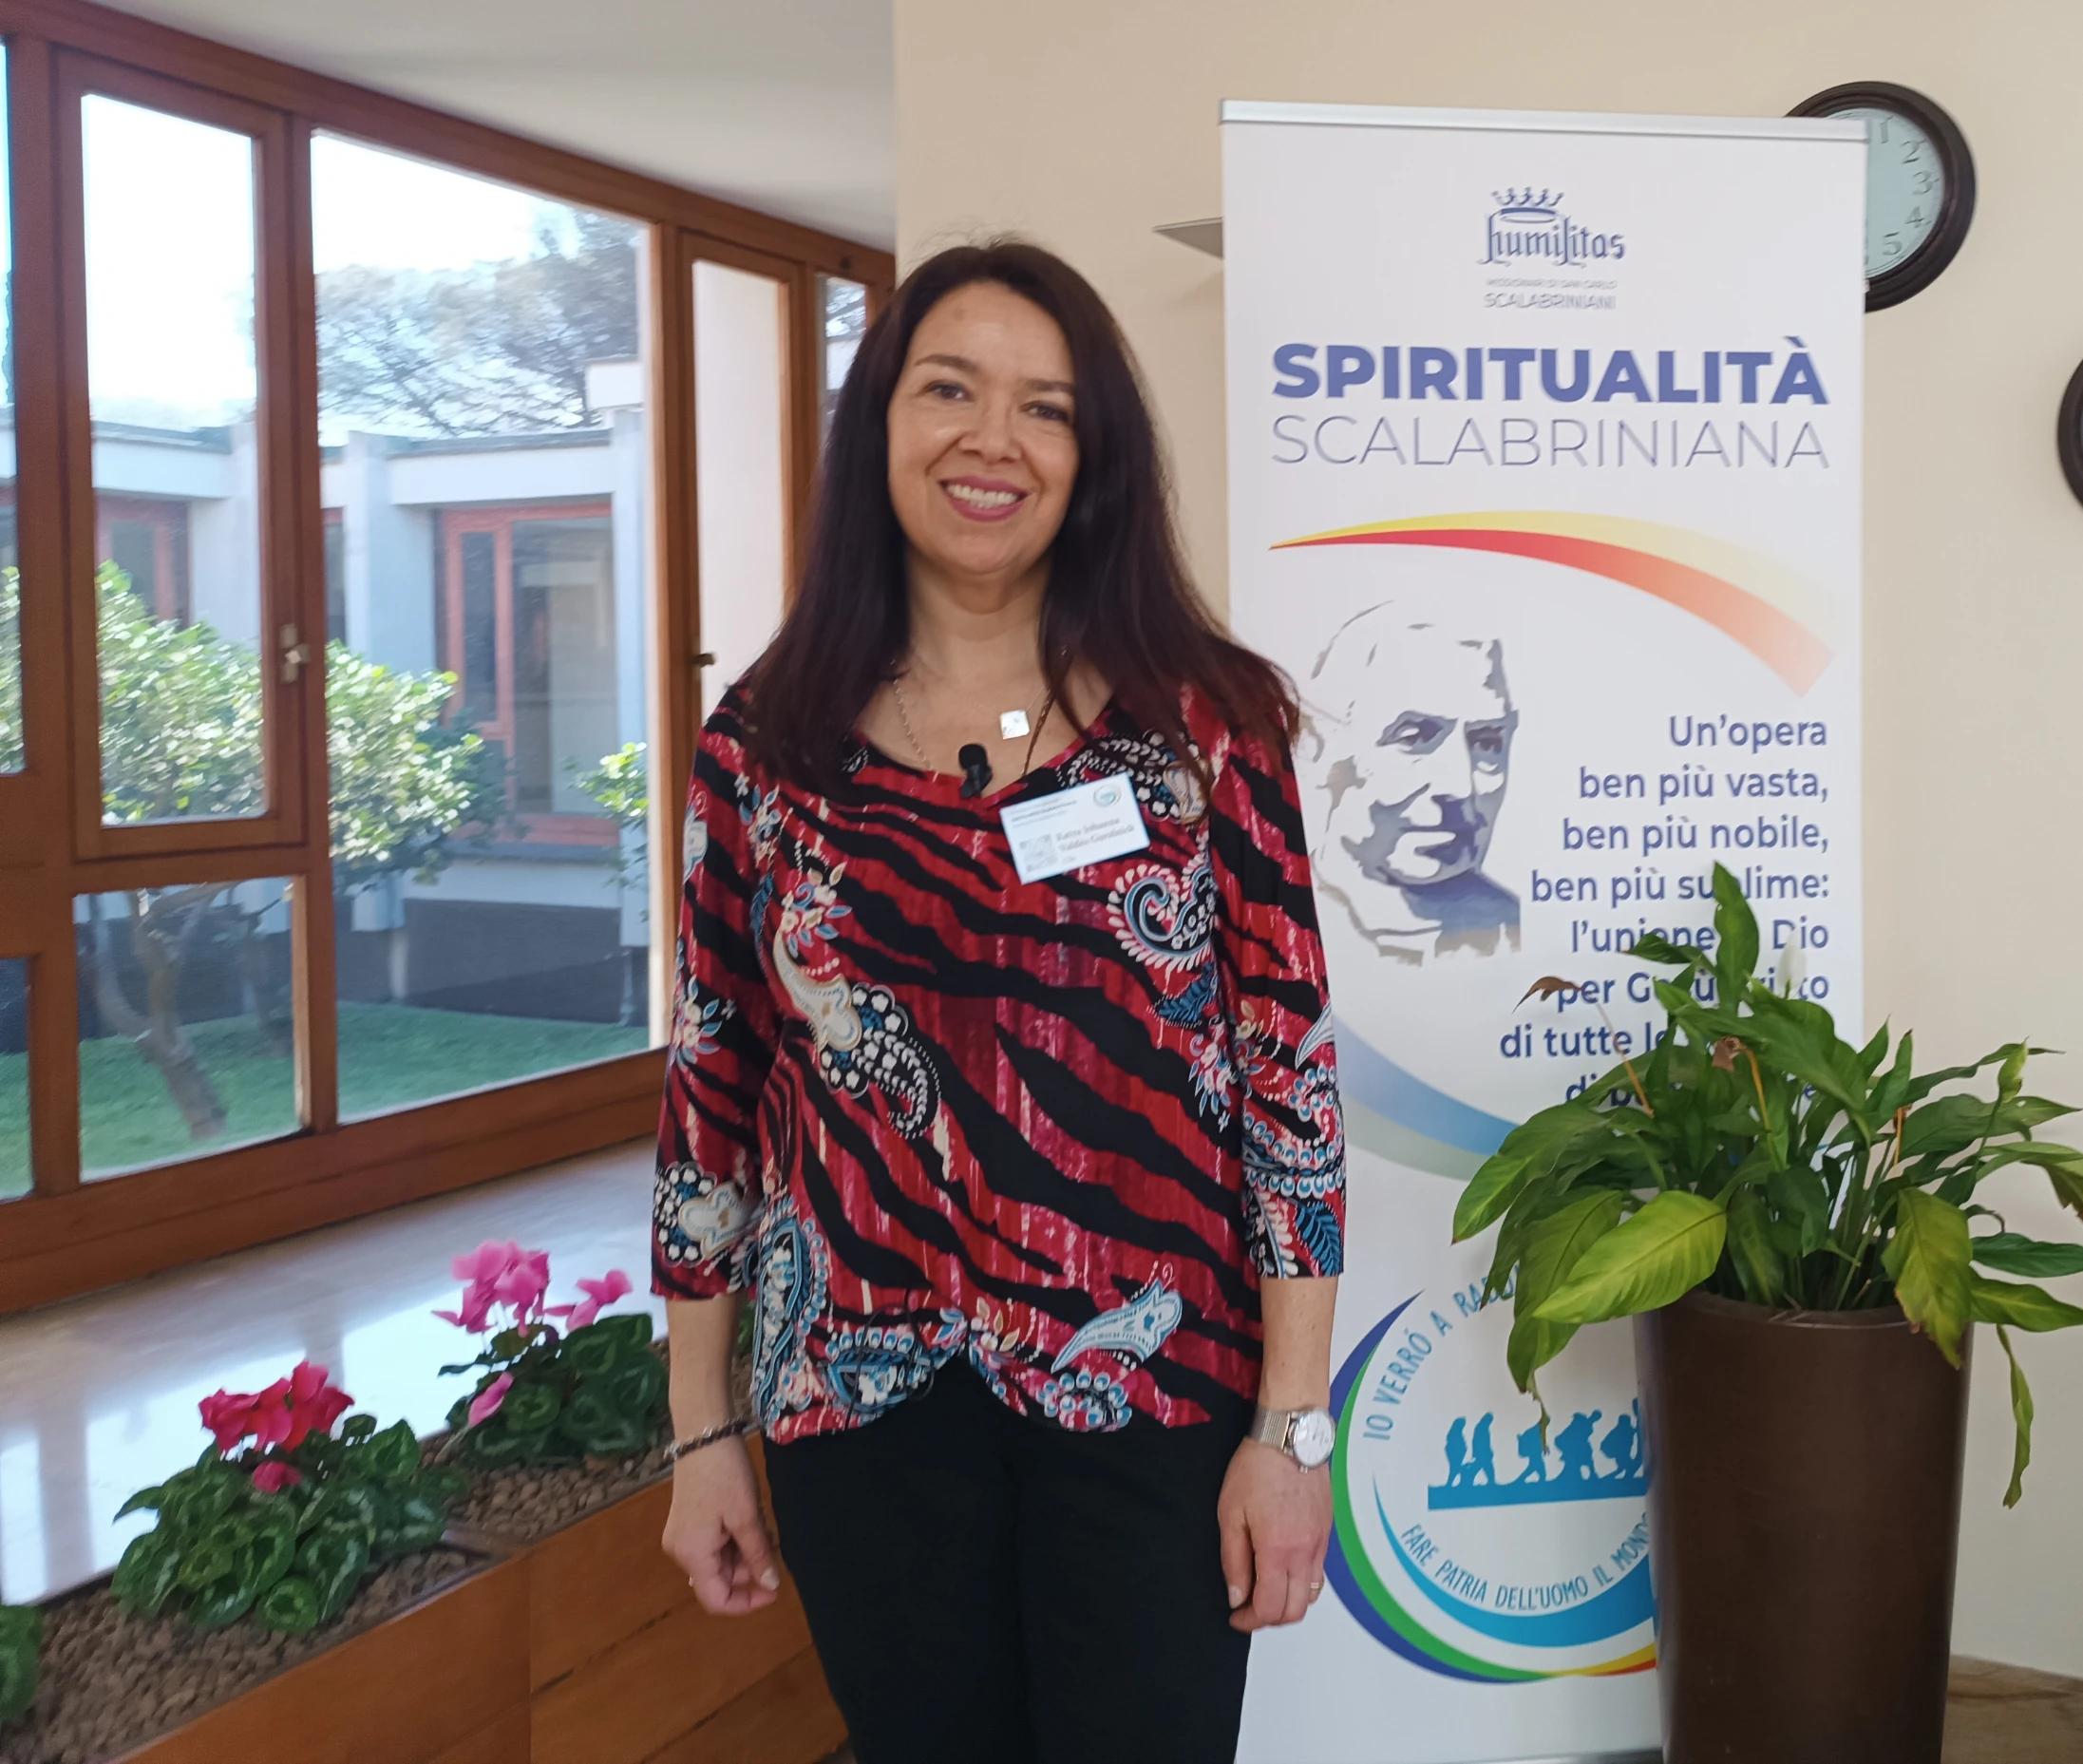 Symposium on Spirituality